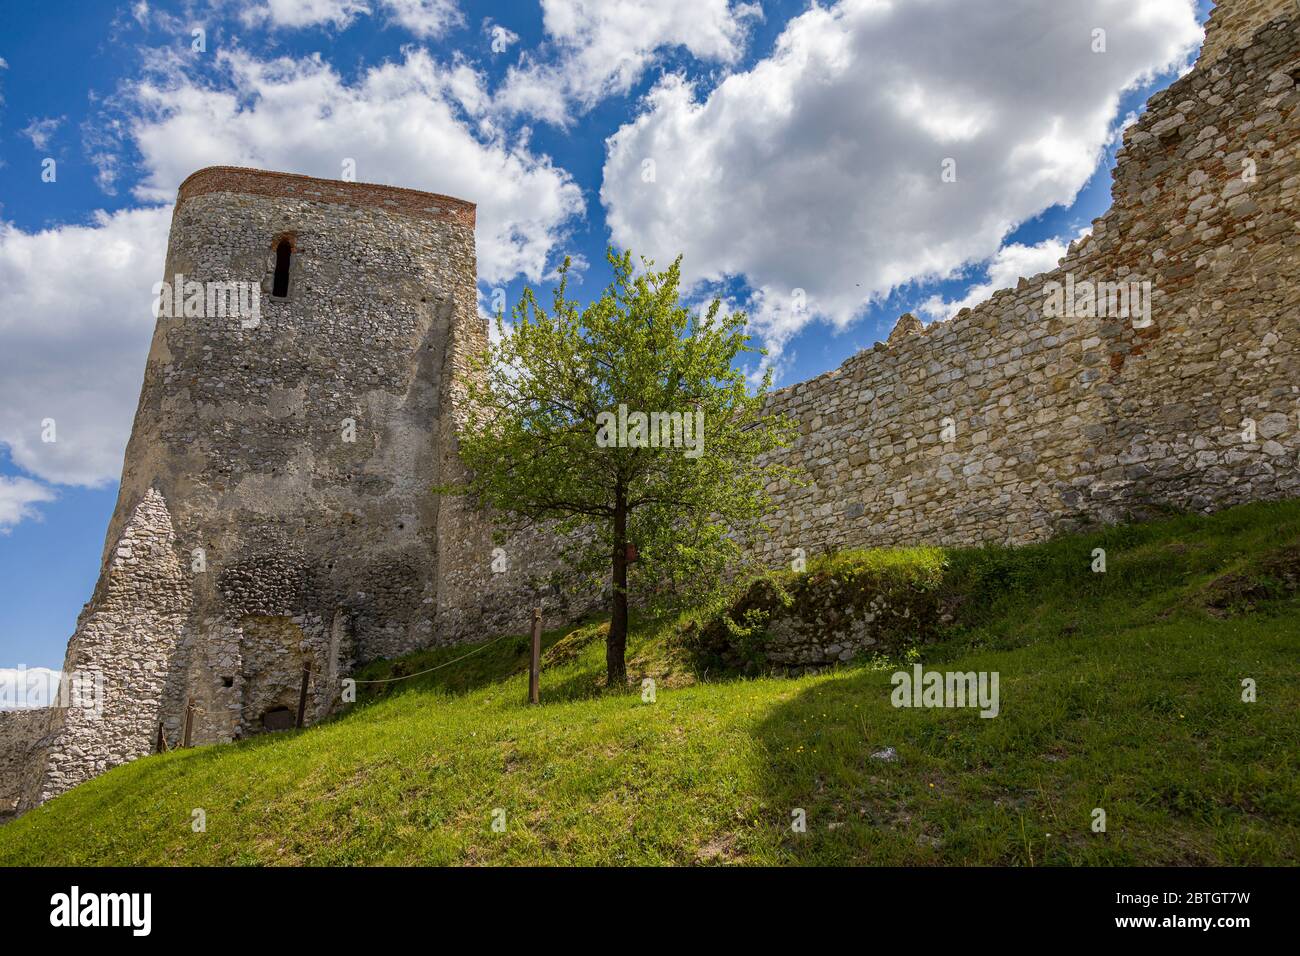 Le rovine del castello di Cachtice sopra il villaggio di Cachtice, Slovacchia Foto Stock